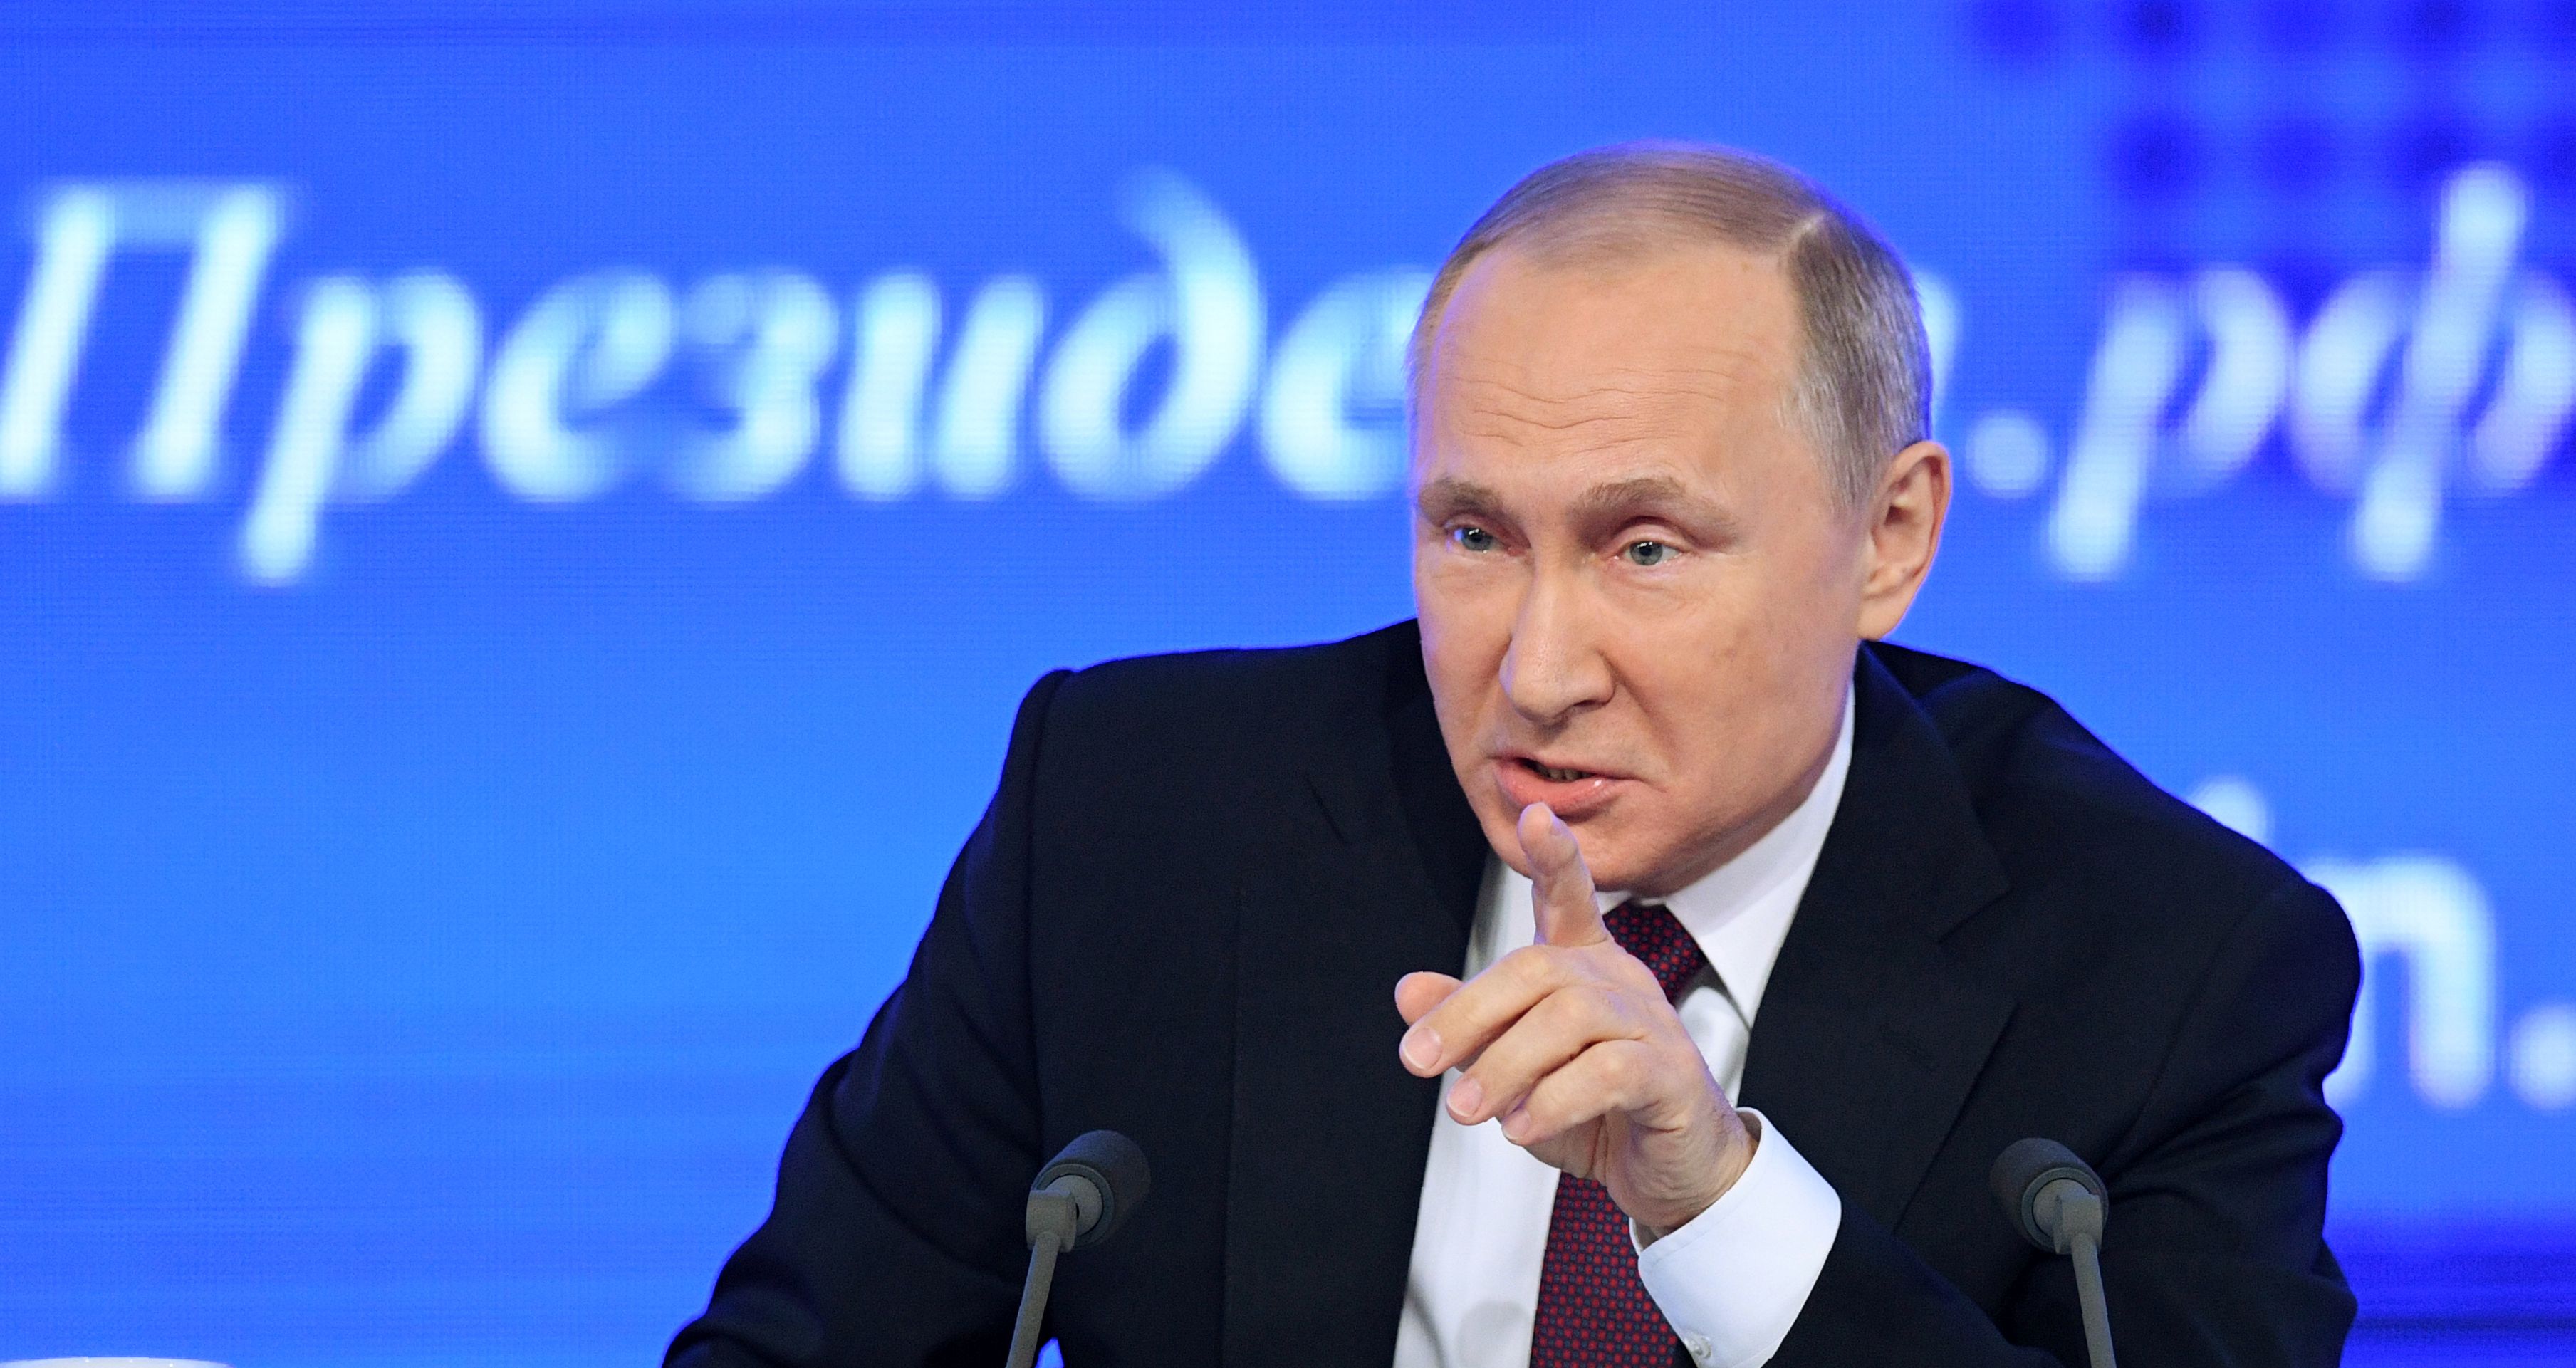 El ascenso de Vladimir Putin al poder | CNN